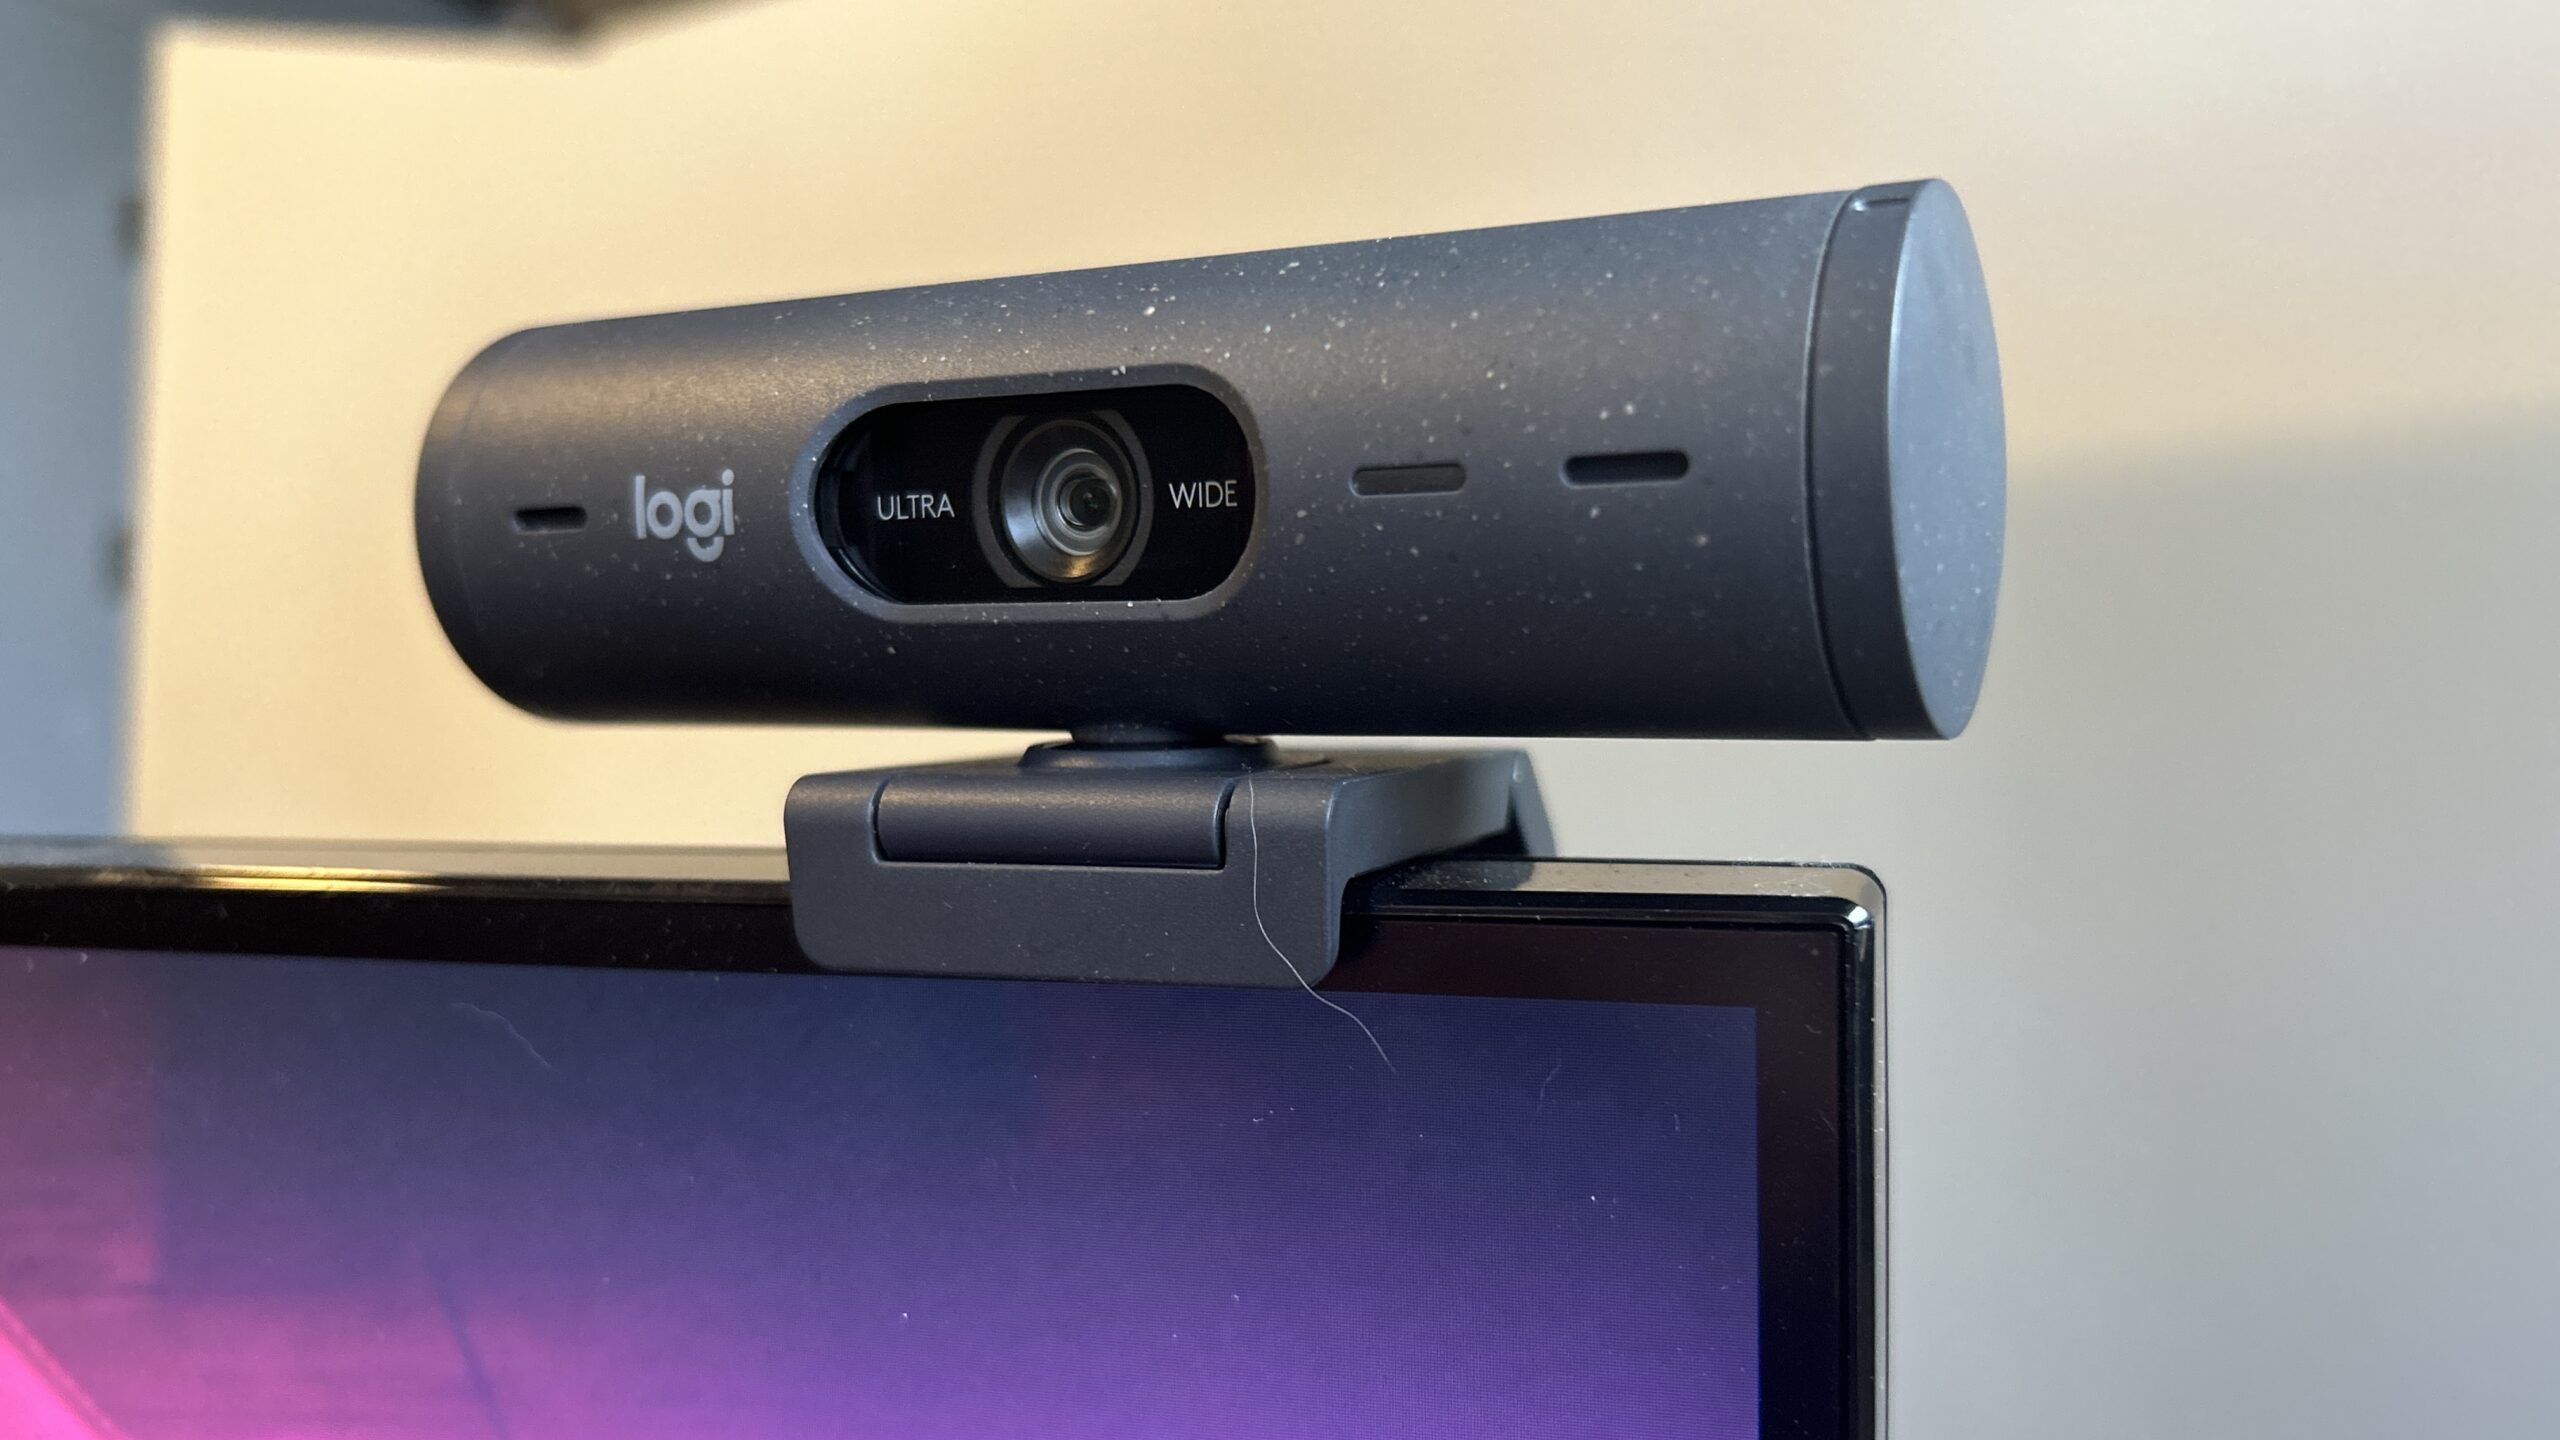 Logitech Brio 105 Full HD 1080p Business Webcam with Auto-Light Balance,  Graphite - webcam - 960-001579 - Webcams 